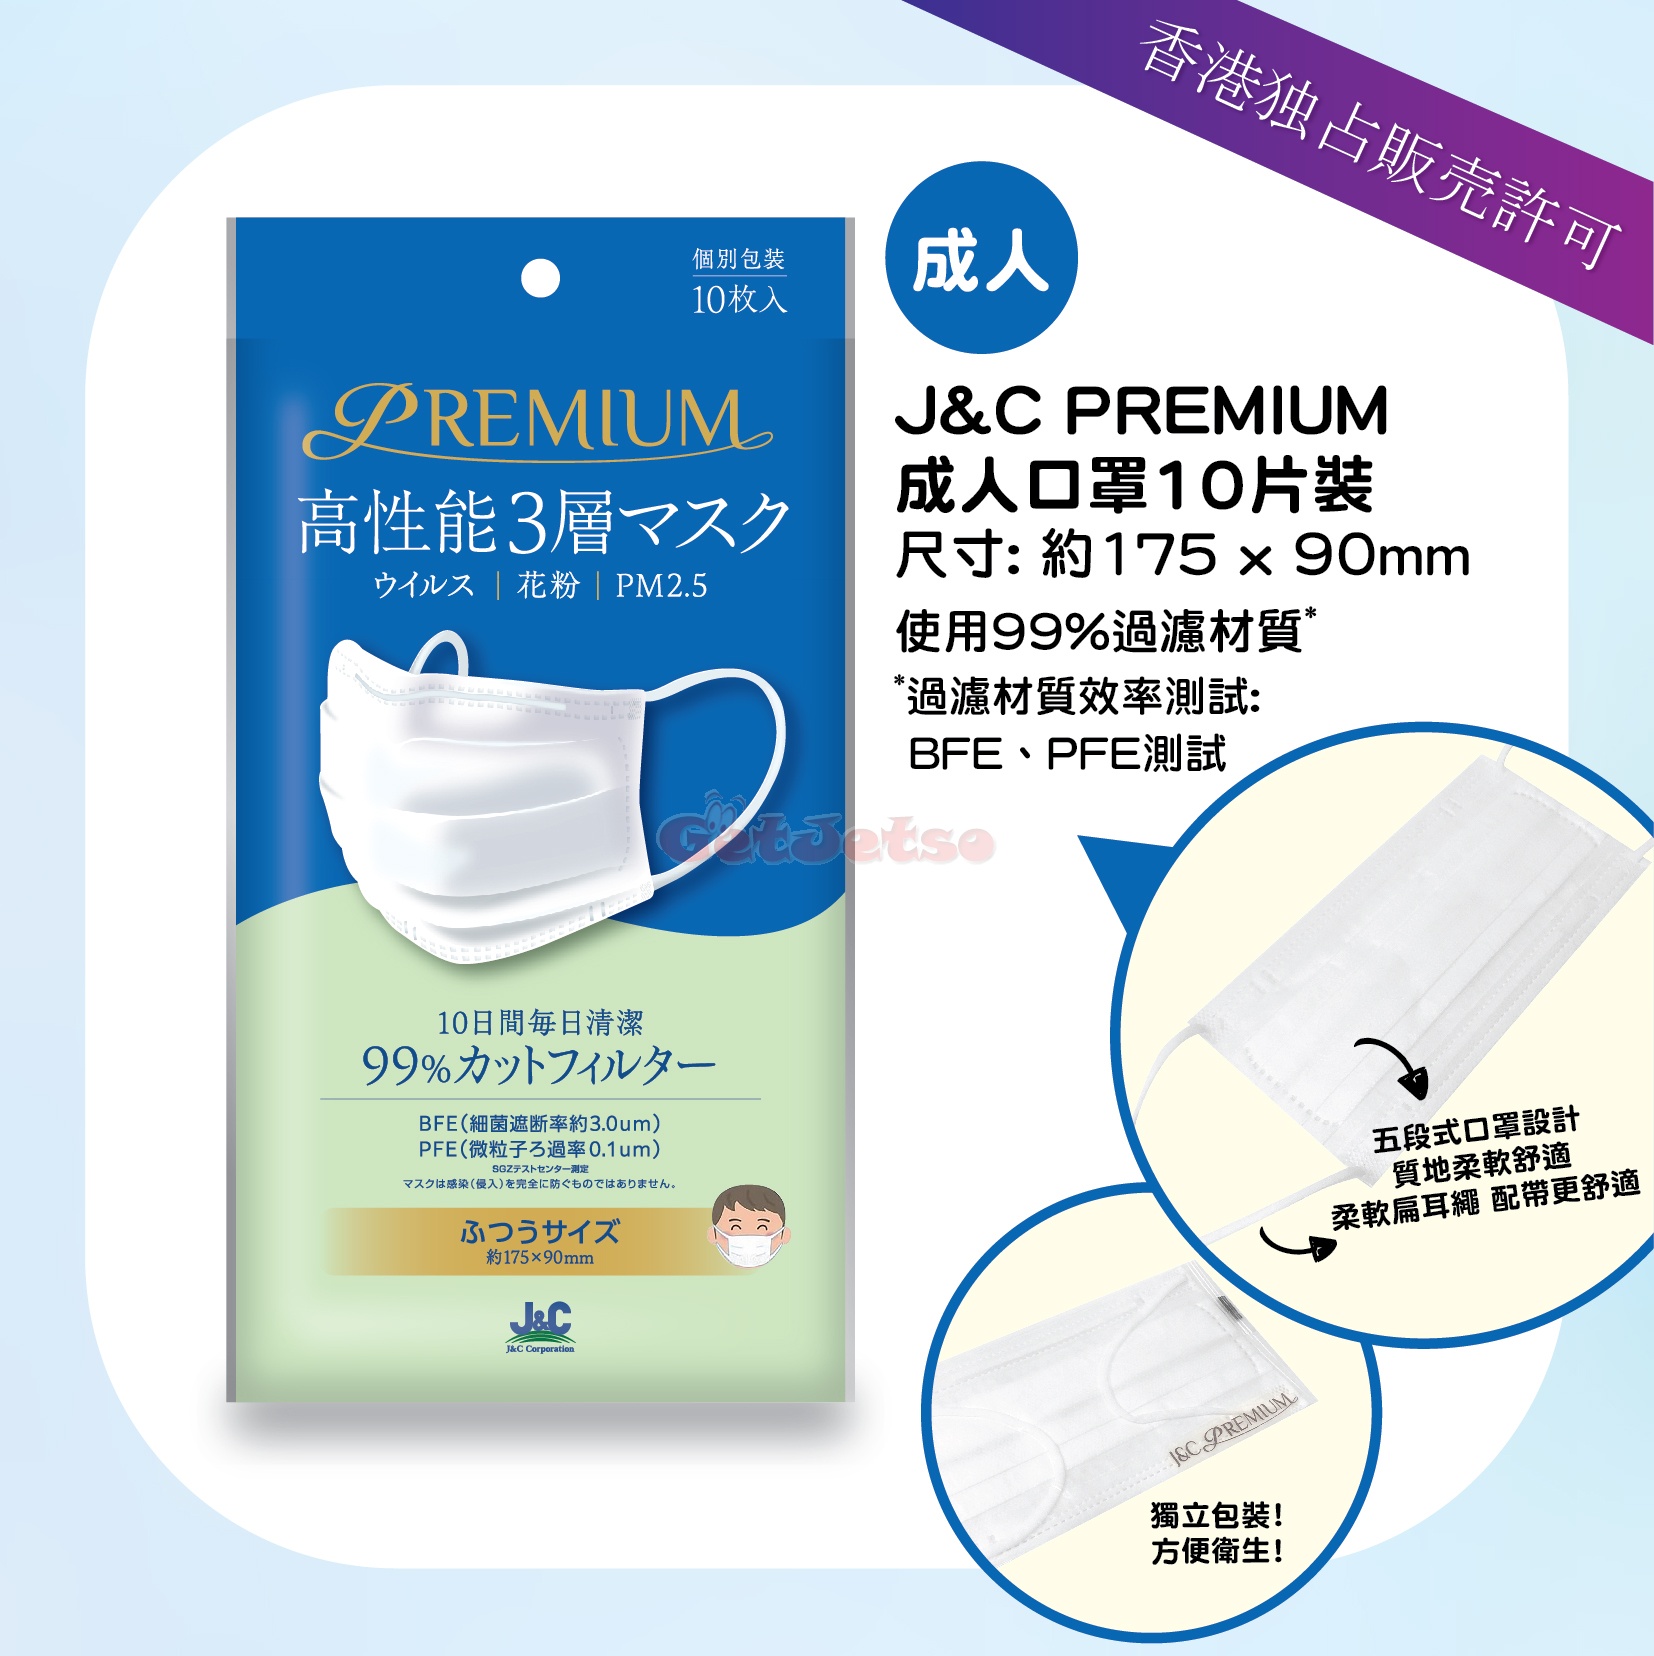 日本城8月14日發售J&C PREMIUM三層口罩圖片2